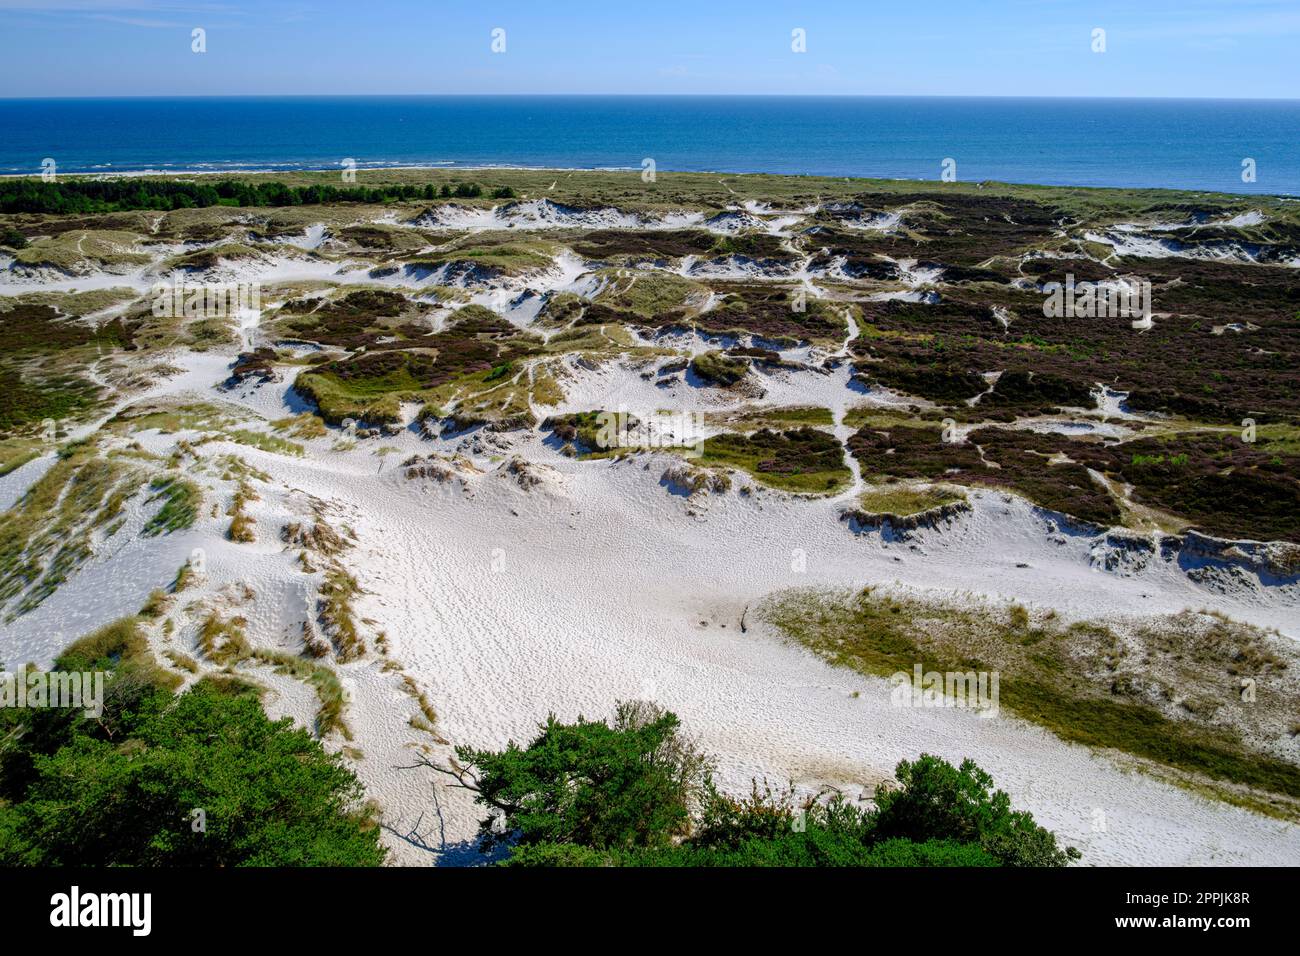 Dunescape de Dueodde Strand, la plage de sable à la pointe sud-est de l'île de Bornholm, Danemark. Banque D'Images